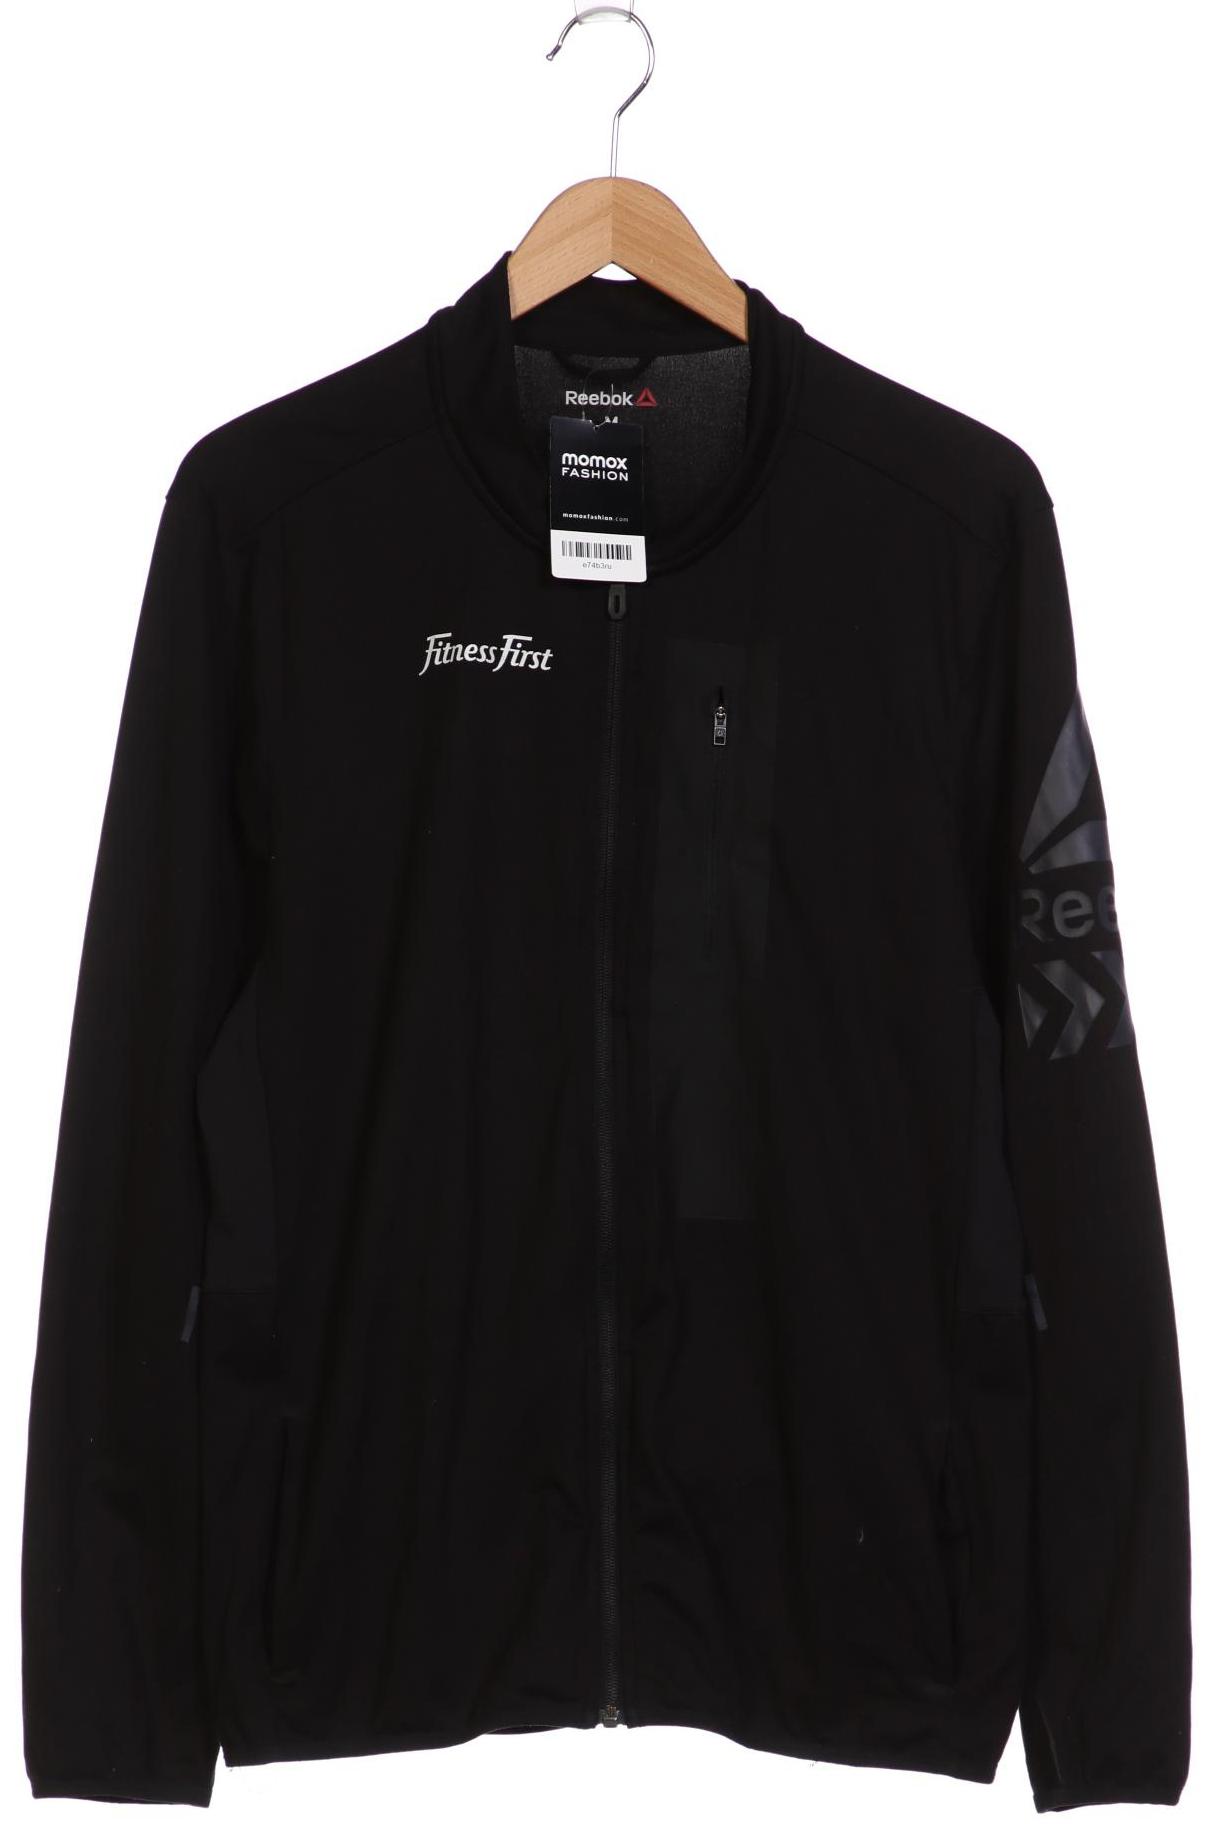 Reebok Damen Sweatshirt, schwarz, Gr. 38 von Reebok